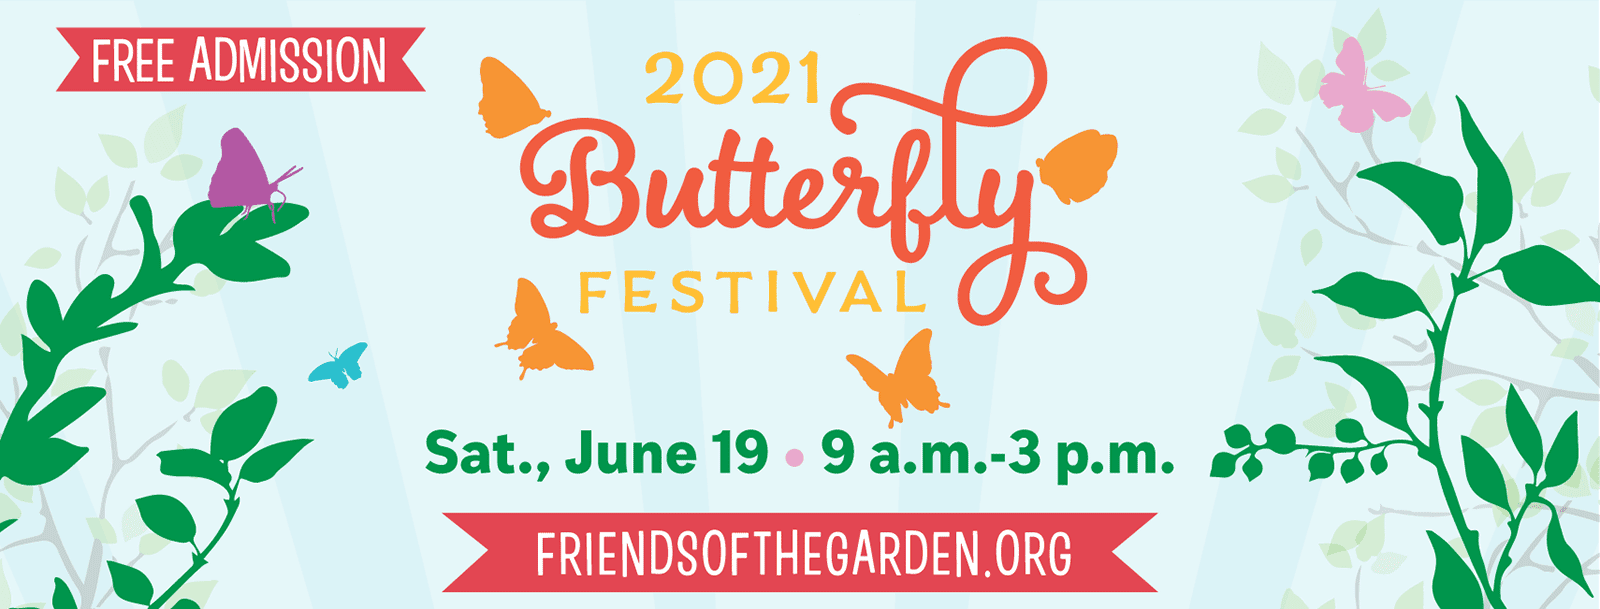 Butterfly Festival 2021